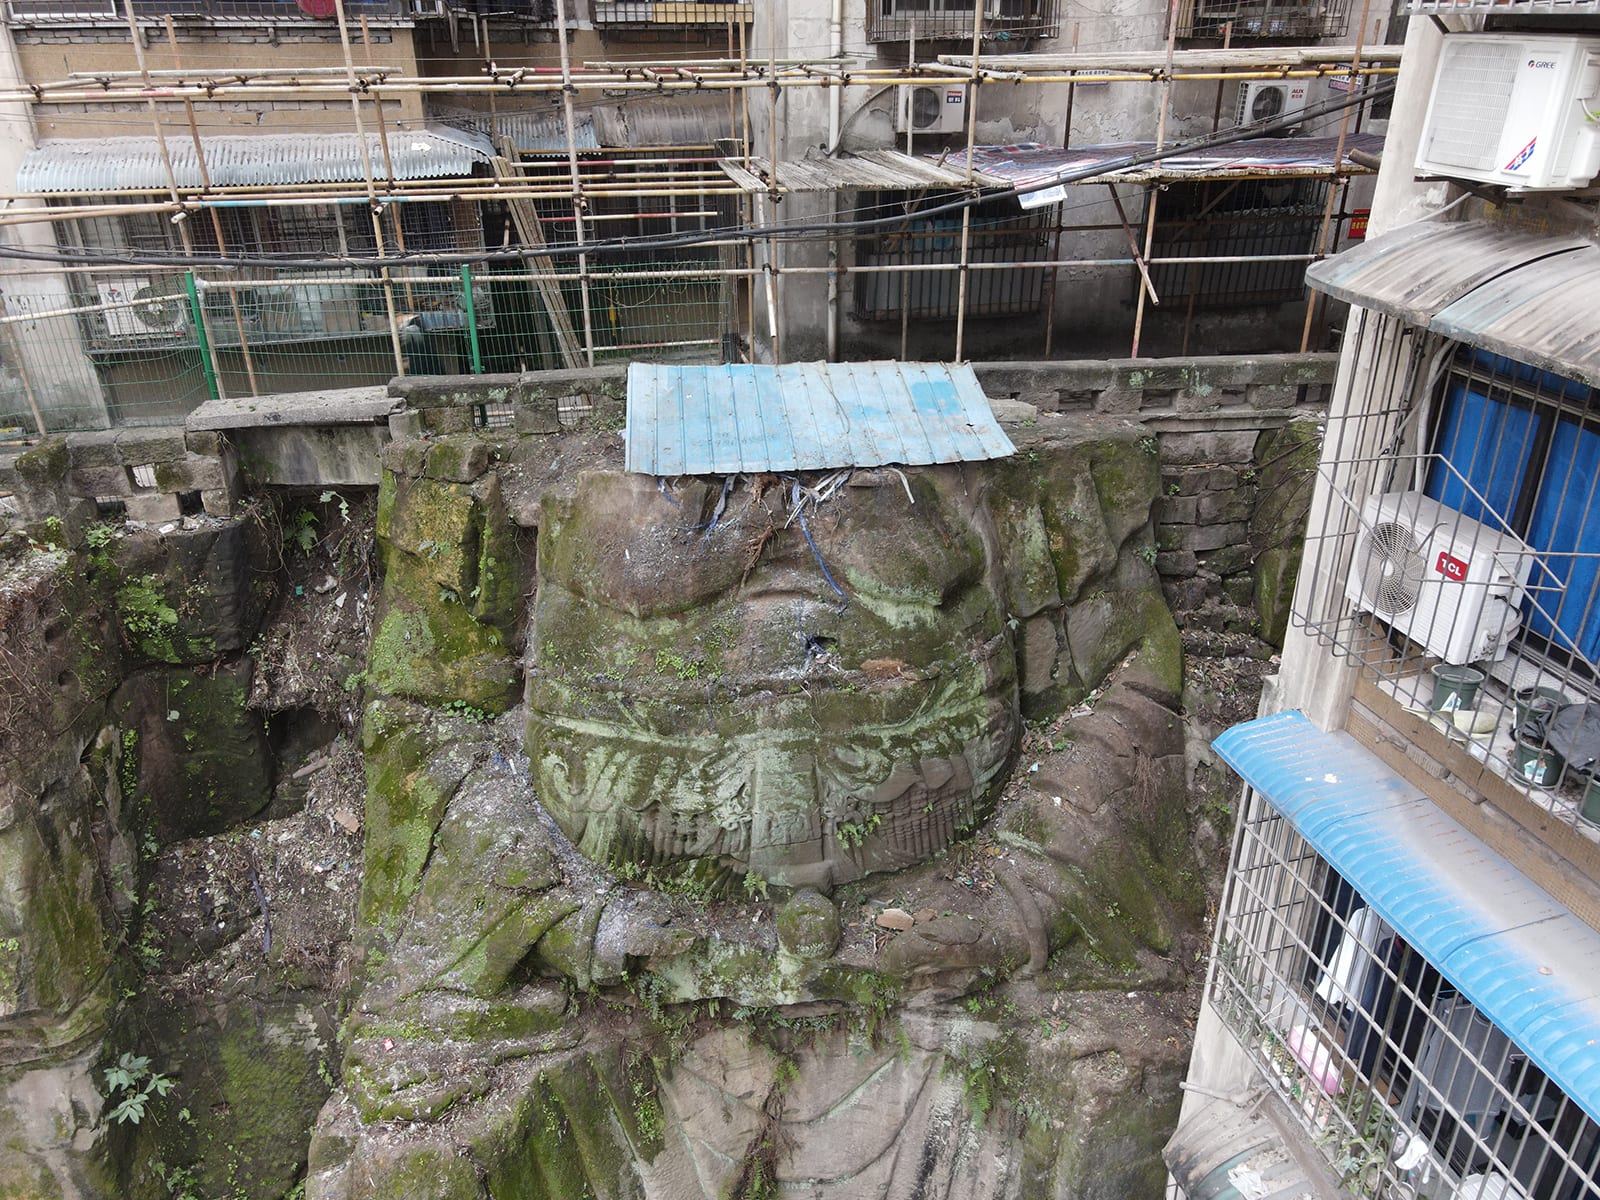 اكتشاف تمثال ديني غامض مقطوع الرأس في مجمع سكني في الصين